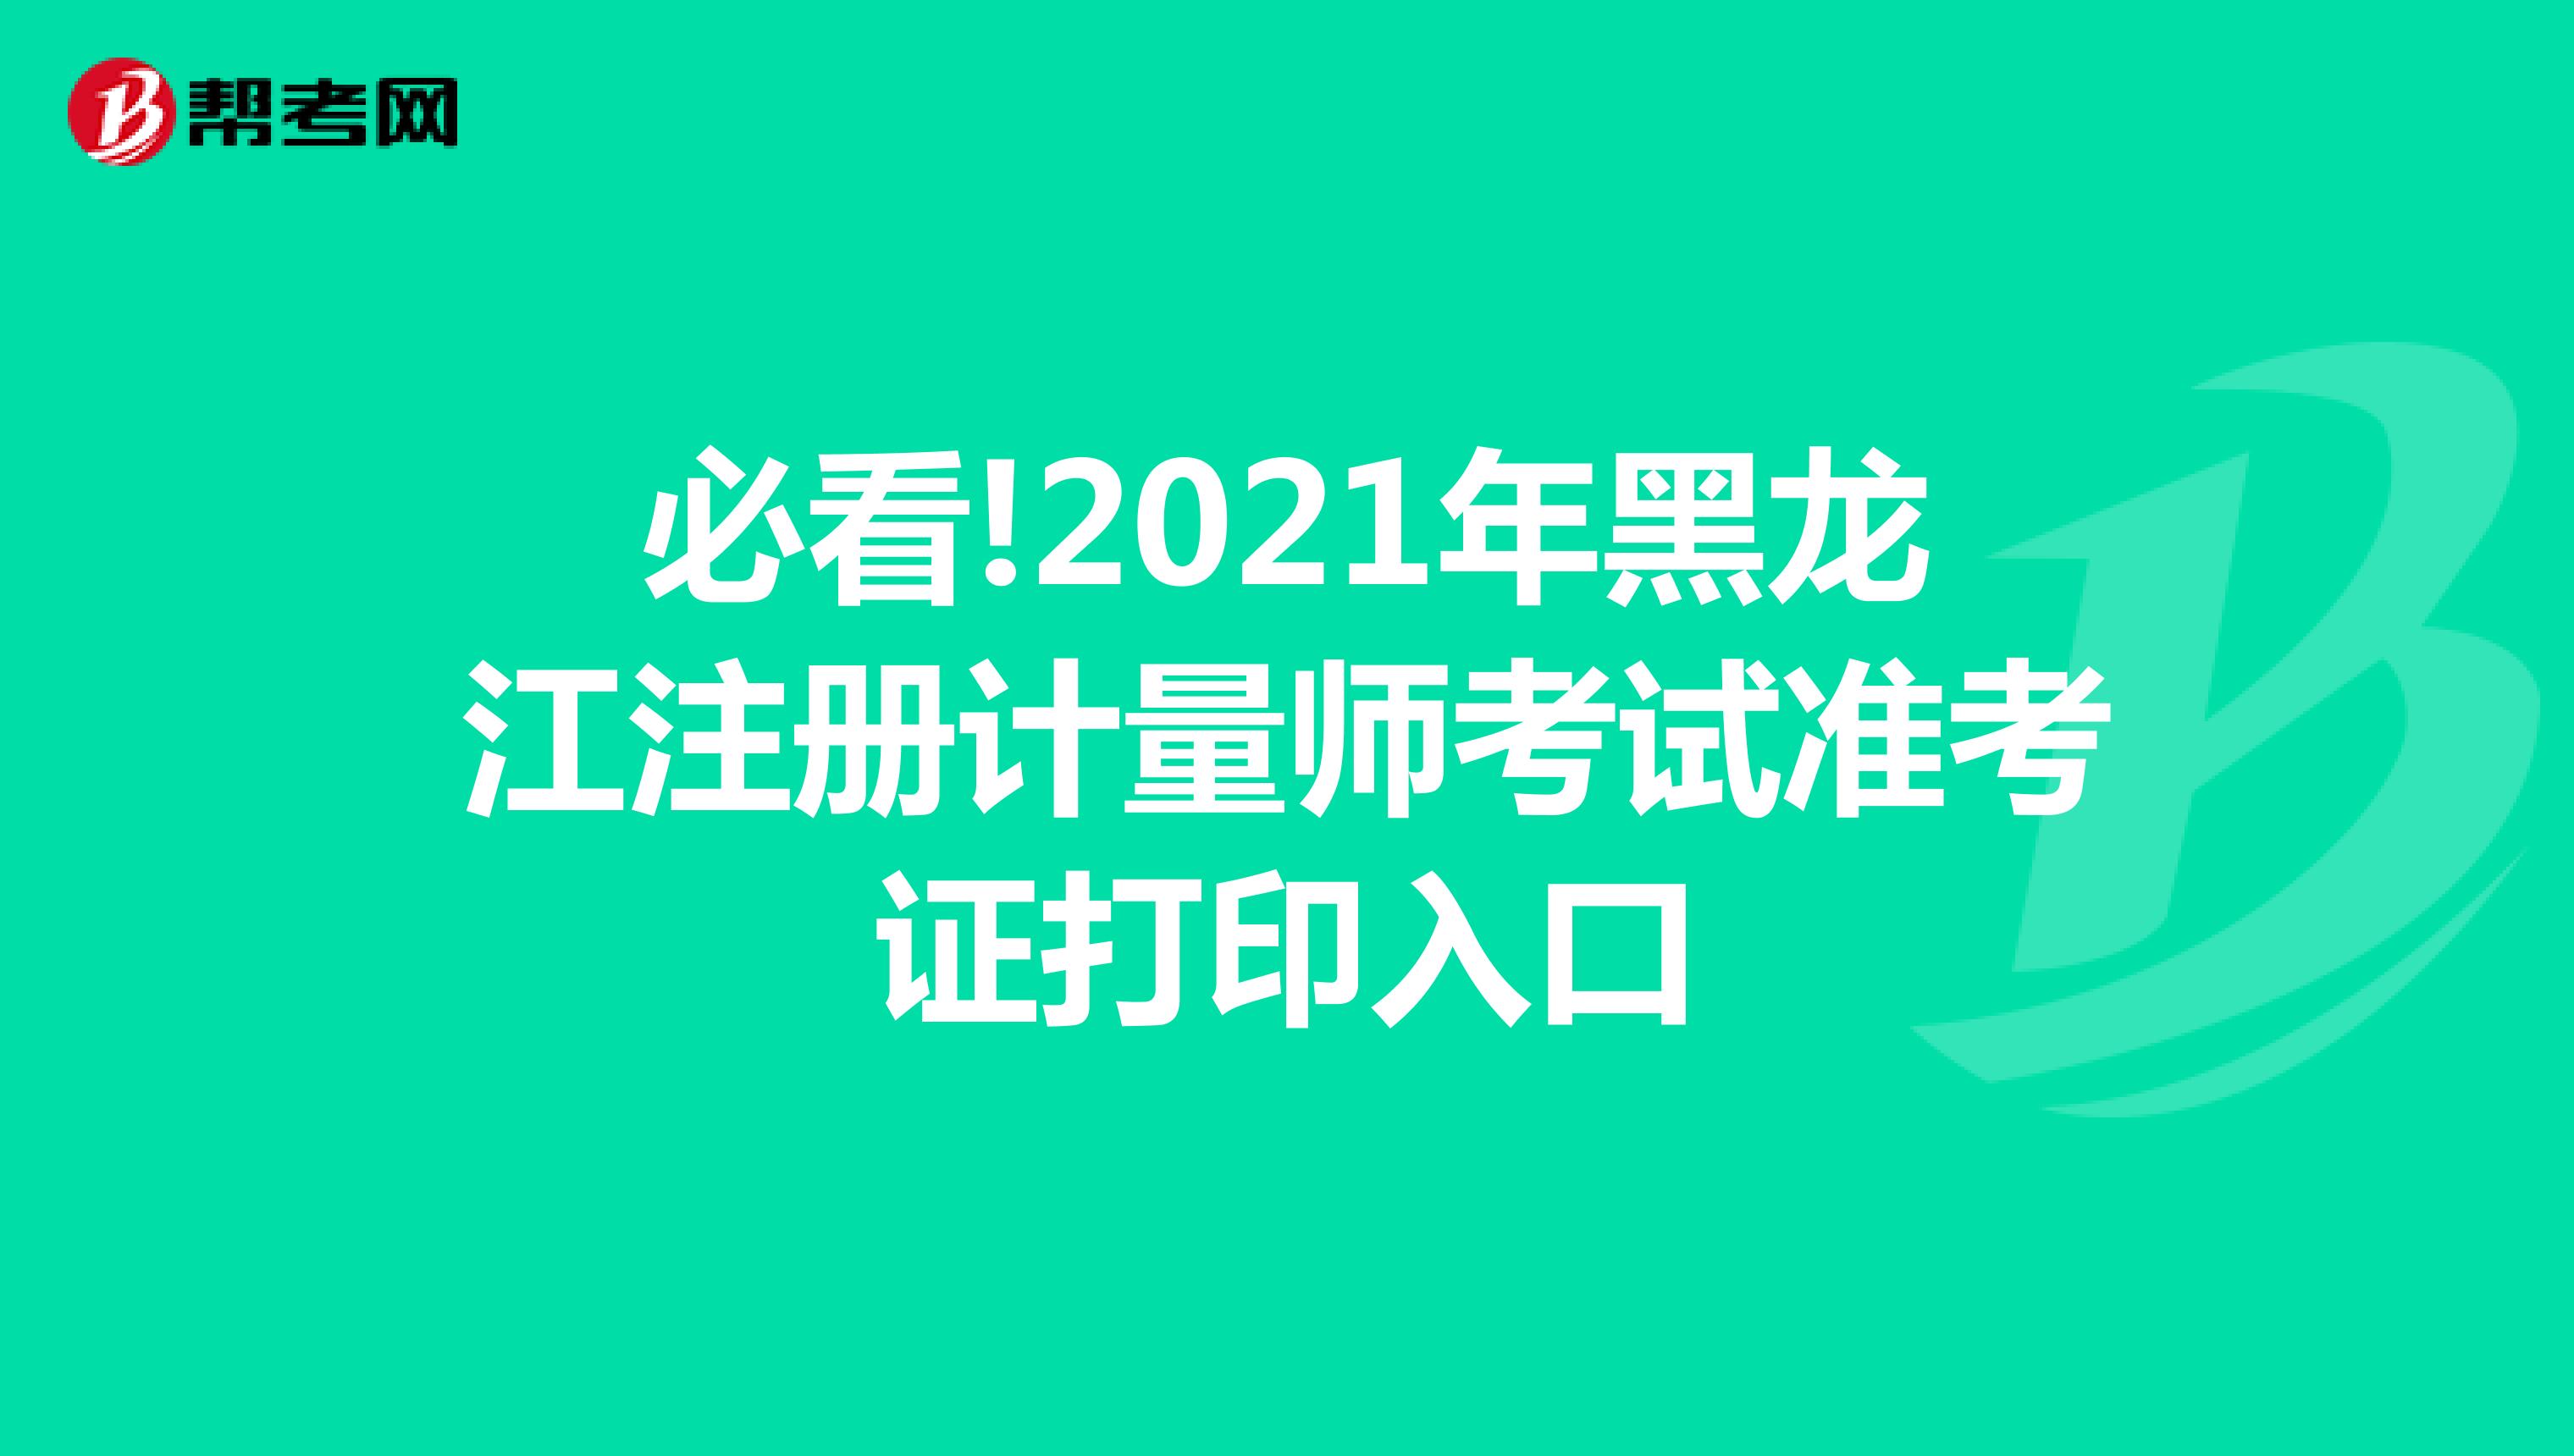 必看!2021年黑龙江注册计量师考试准考证打印入口